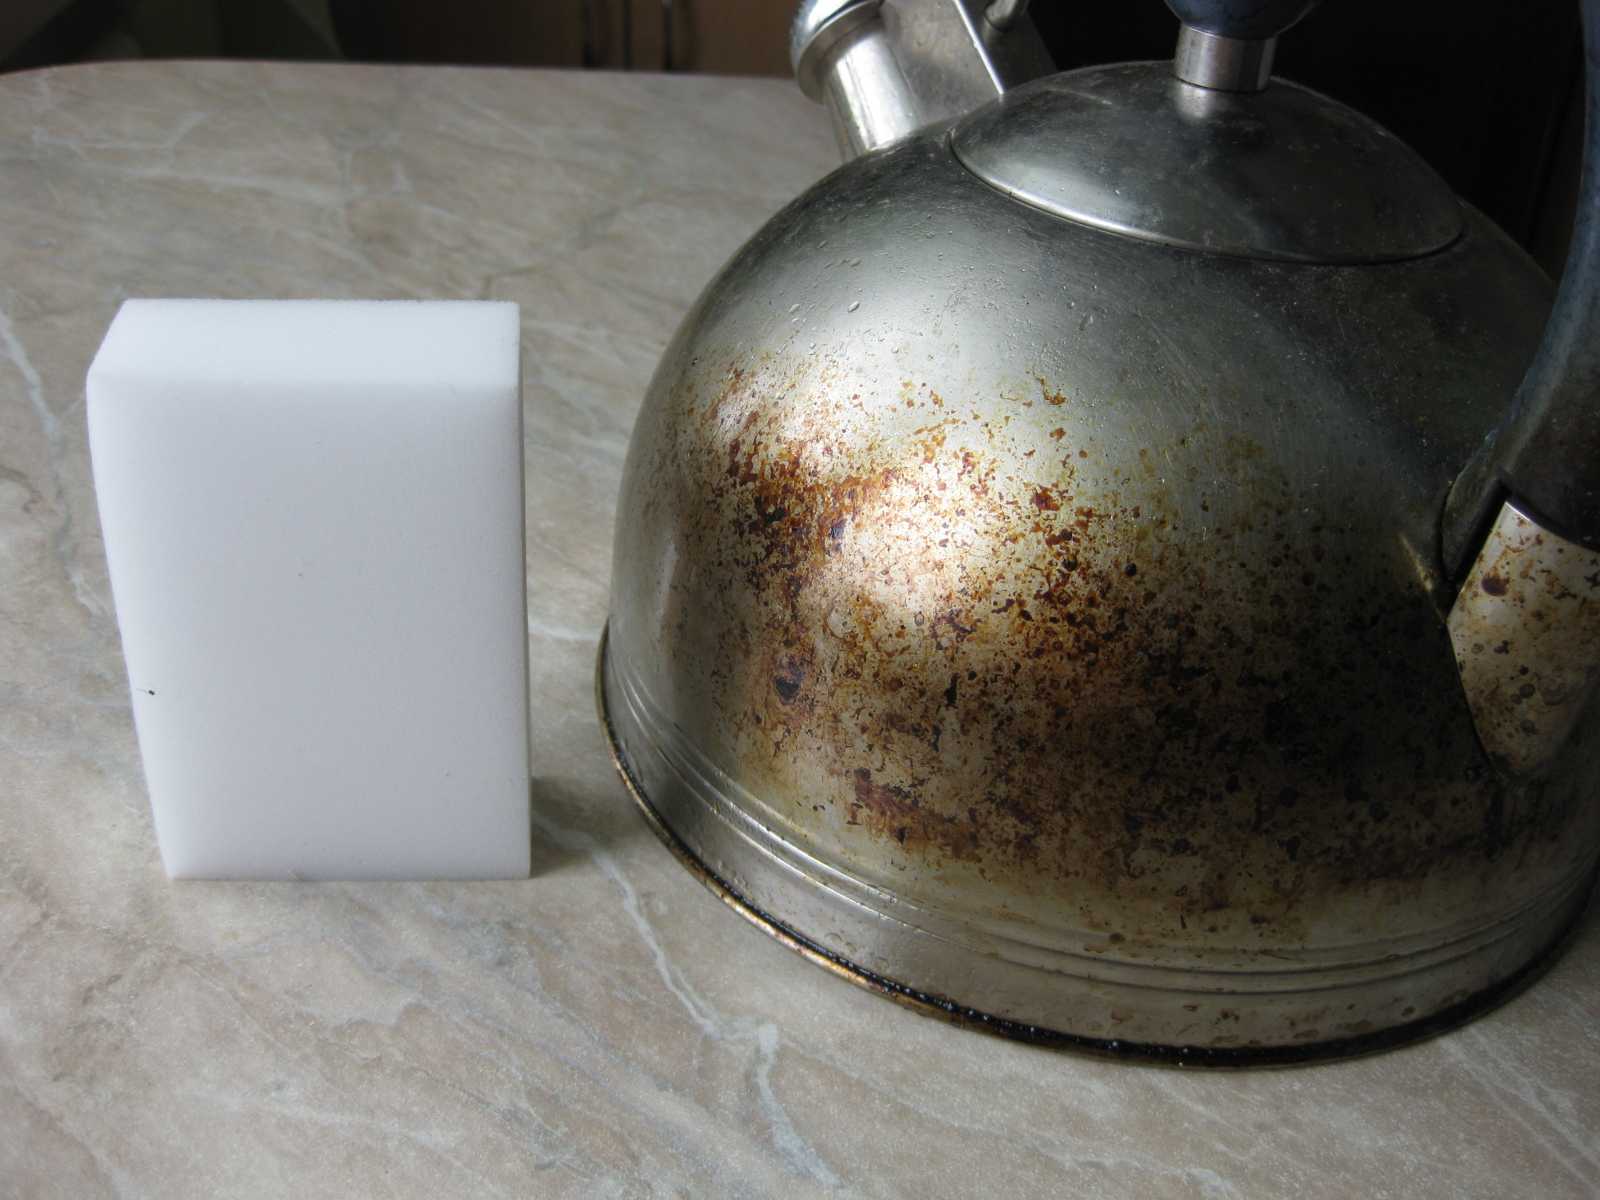 Как отмыть чайник от жира снаружи в домашних условиях, как выбрать подходящие средства